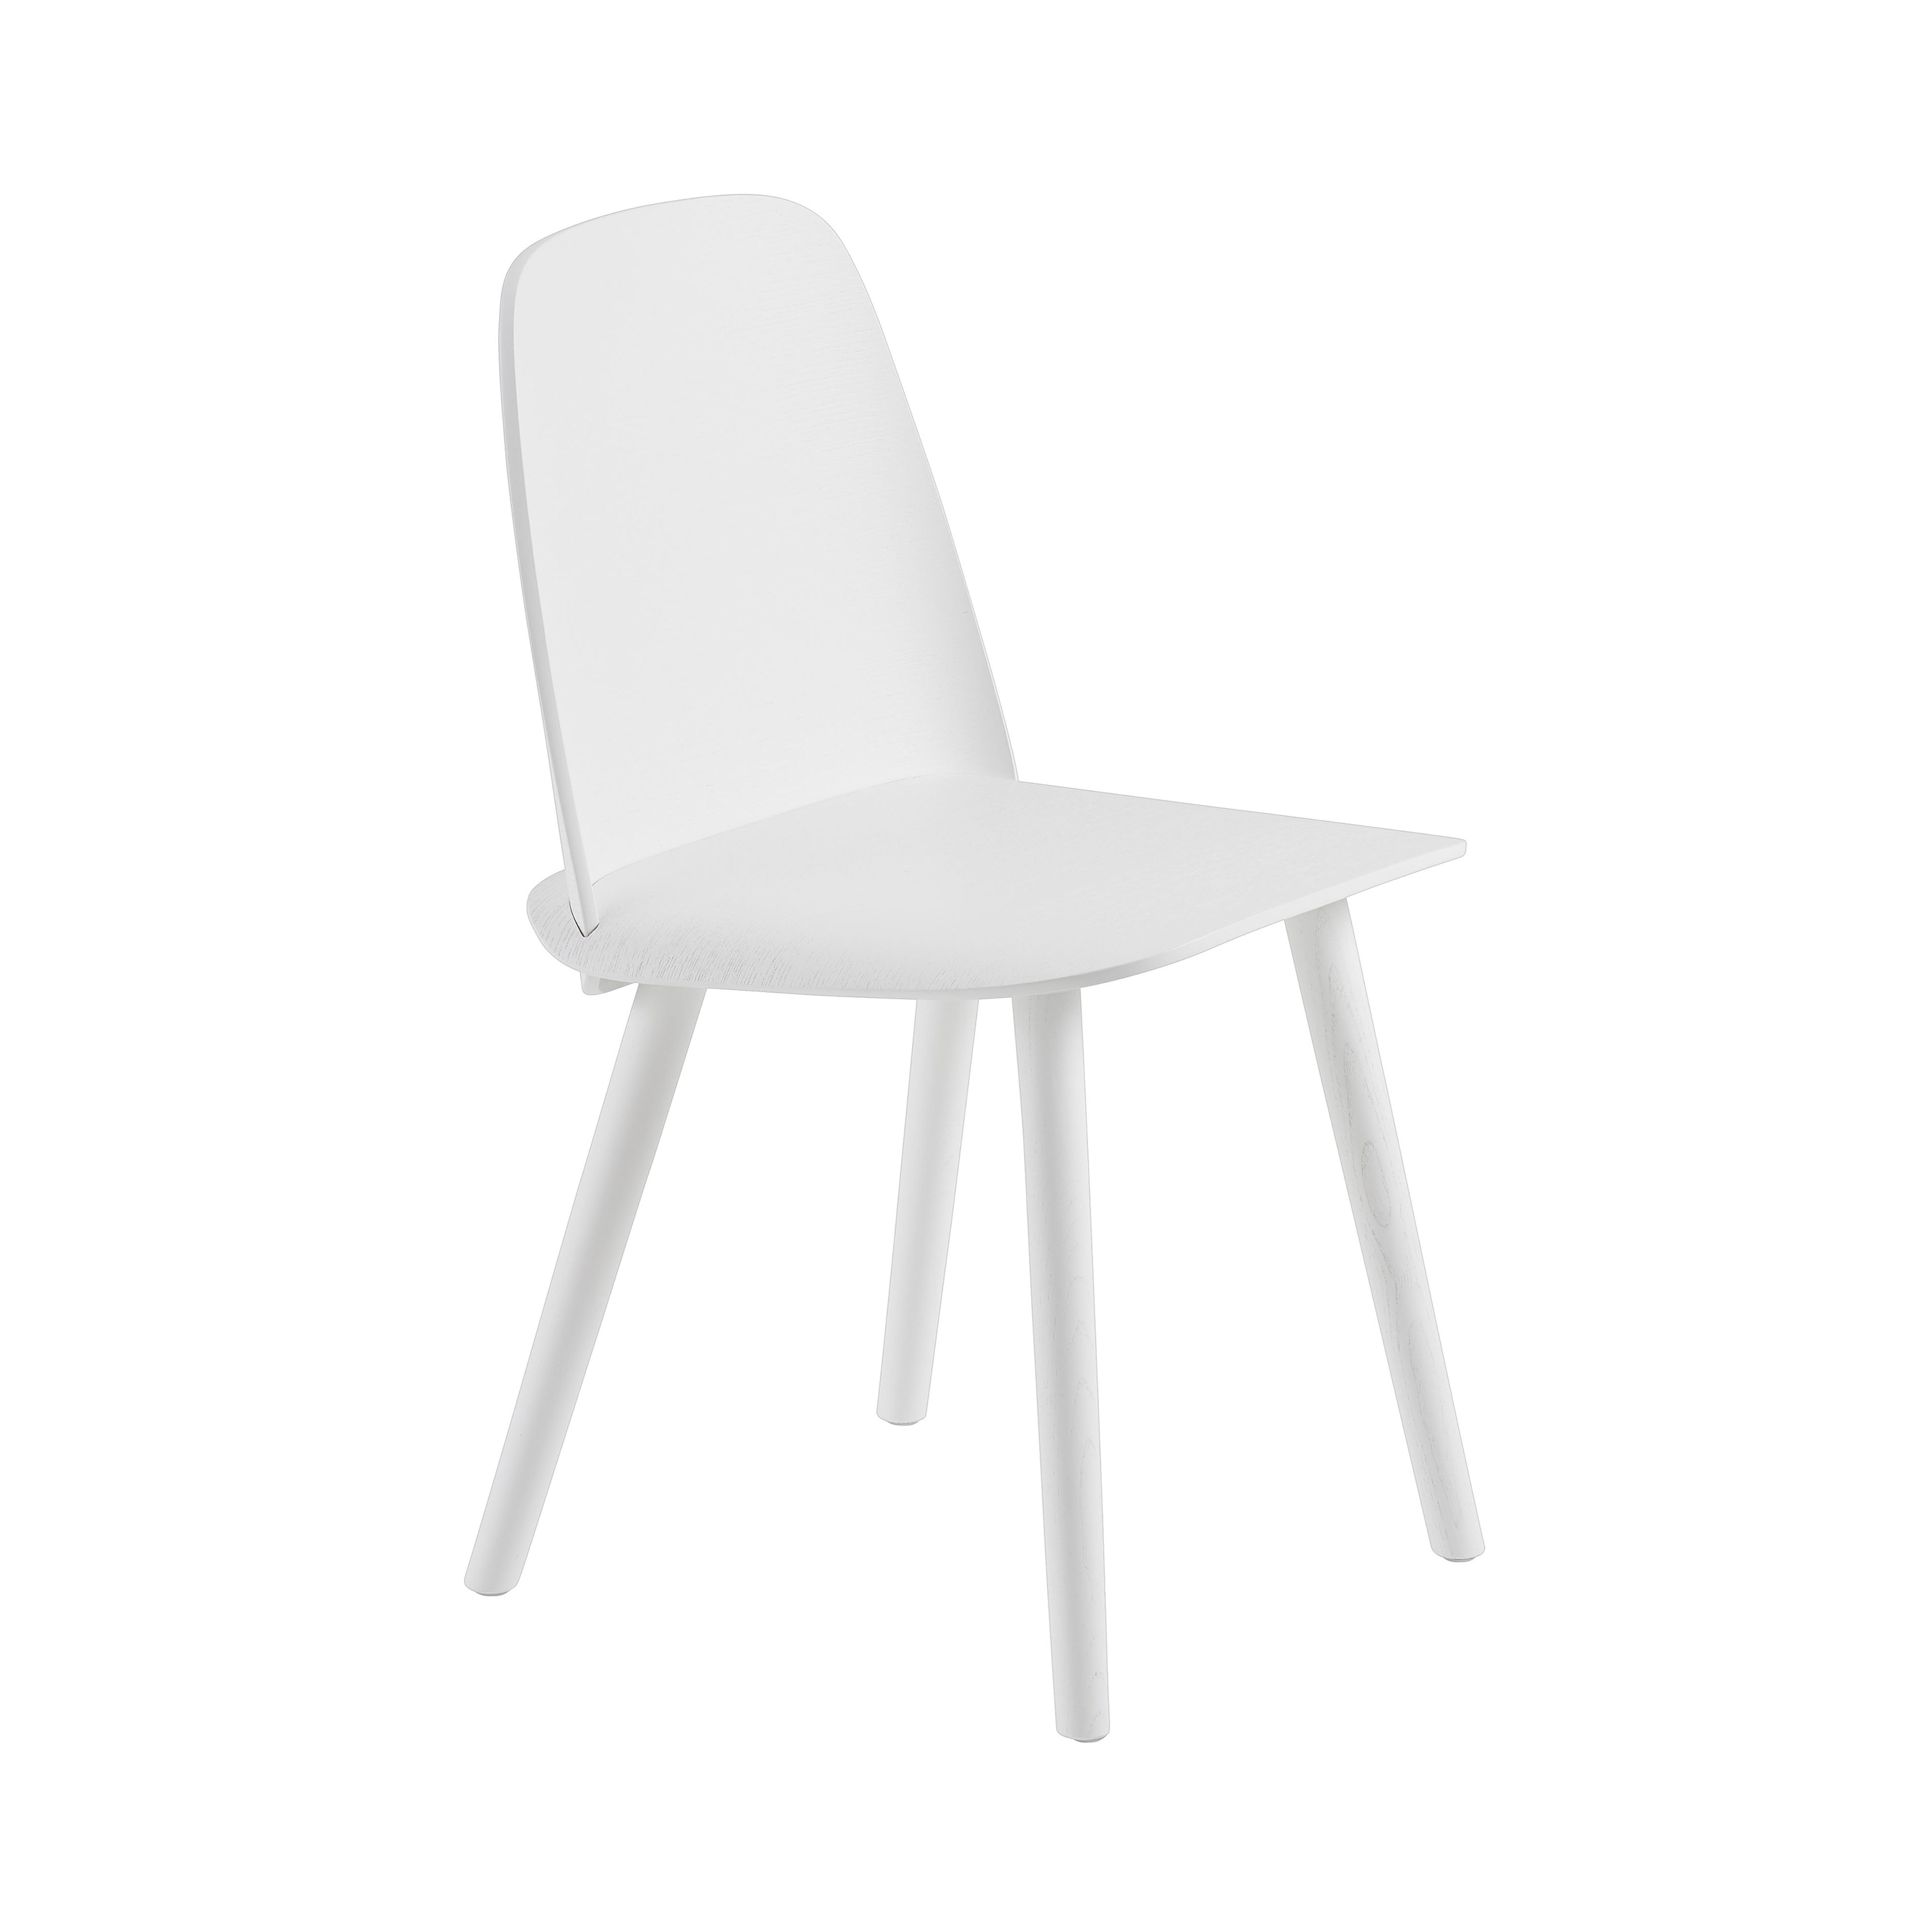 Nerd Chair: White